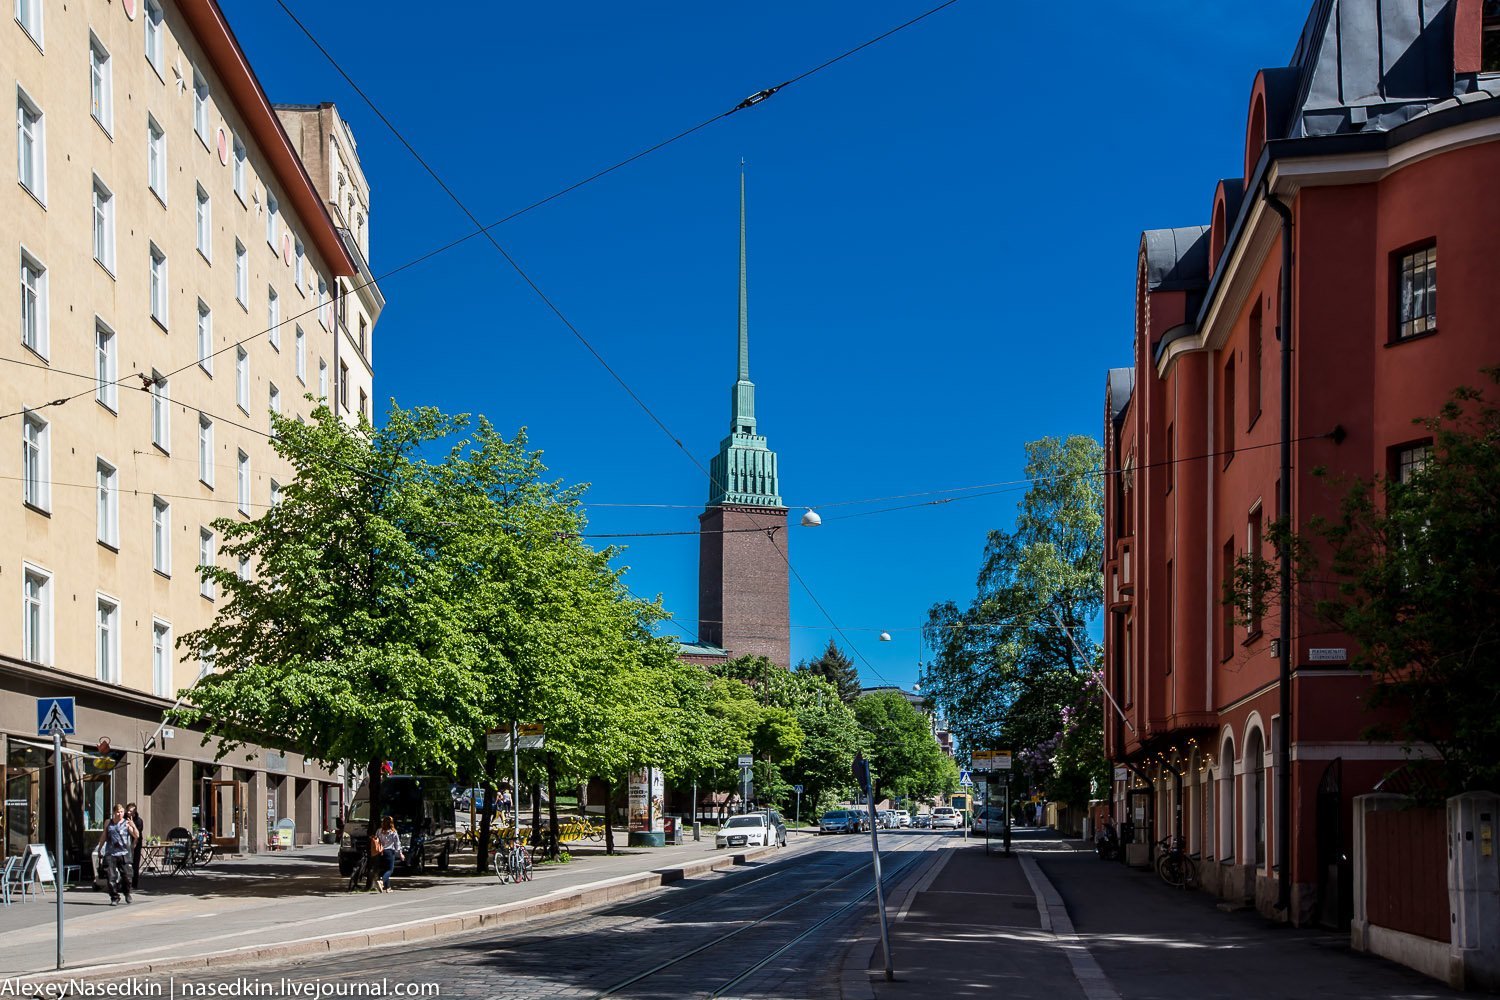 Хельсинки столица чего. Хельсинки улица Puistokatu,. Хельсинки улица лайвуренкату. Гнезно Хельсинки. Улицы Хельсинки летом.